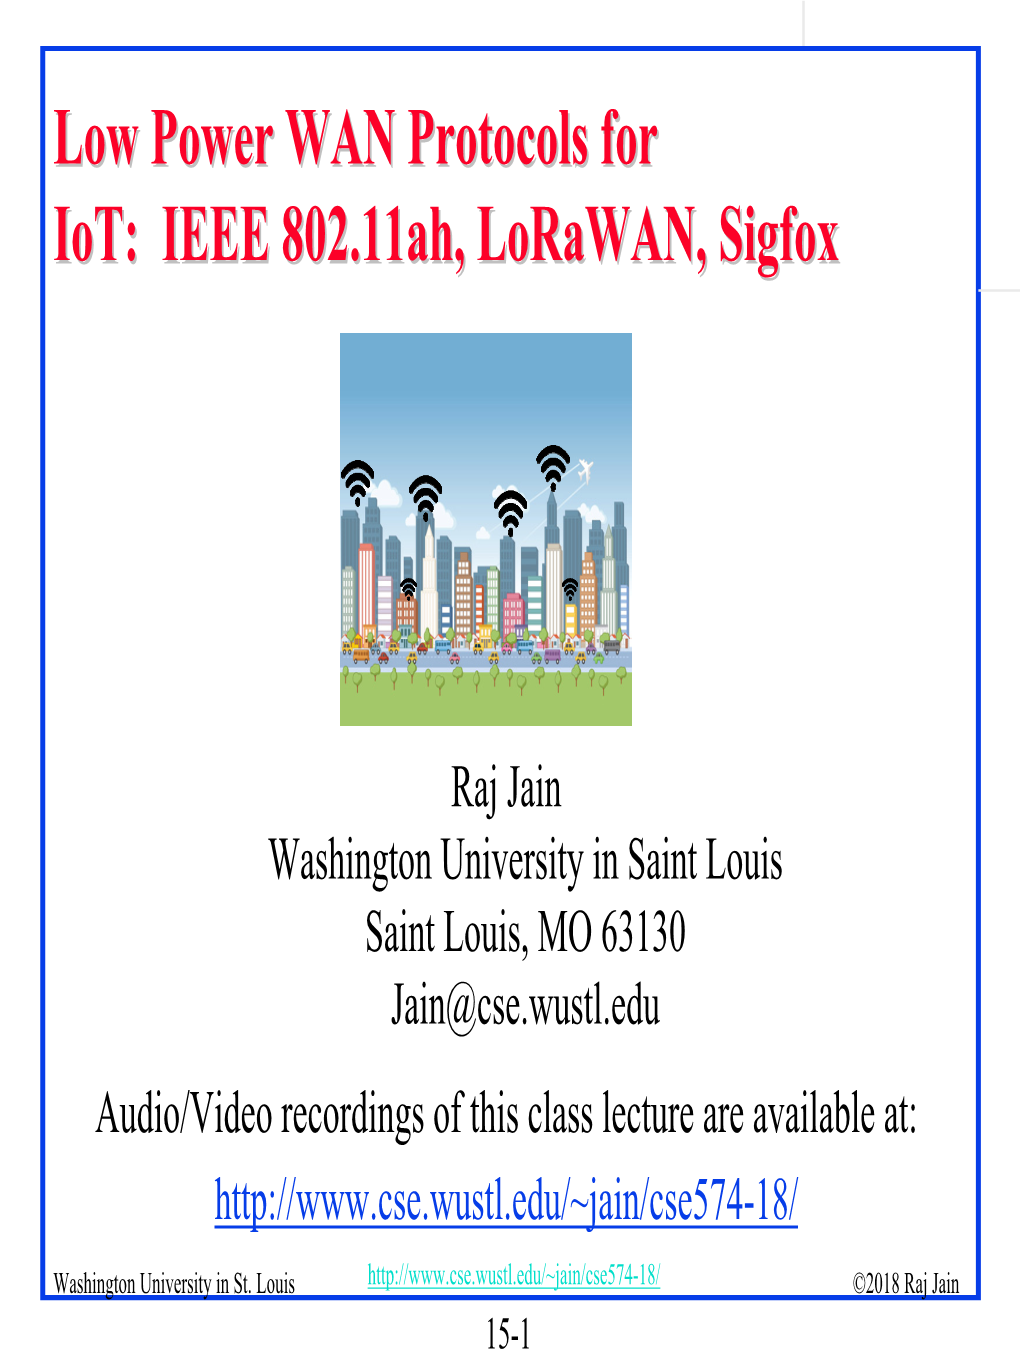 IEEE 802.11Ah, Lorawan, and Sigfox